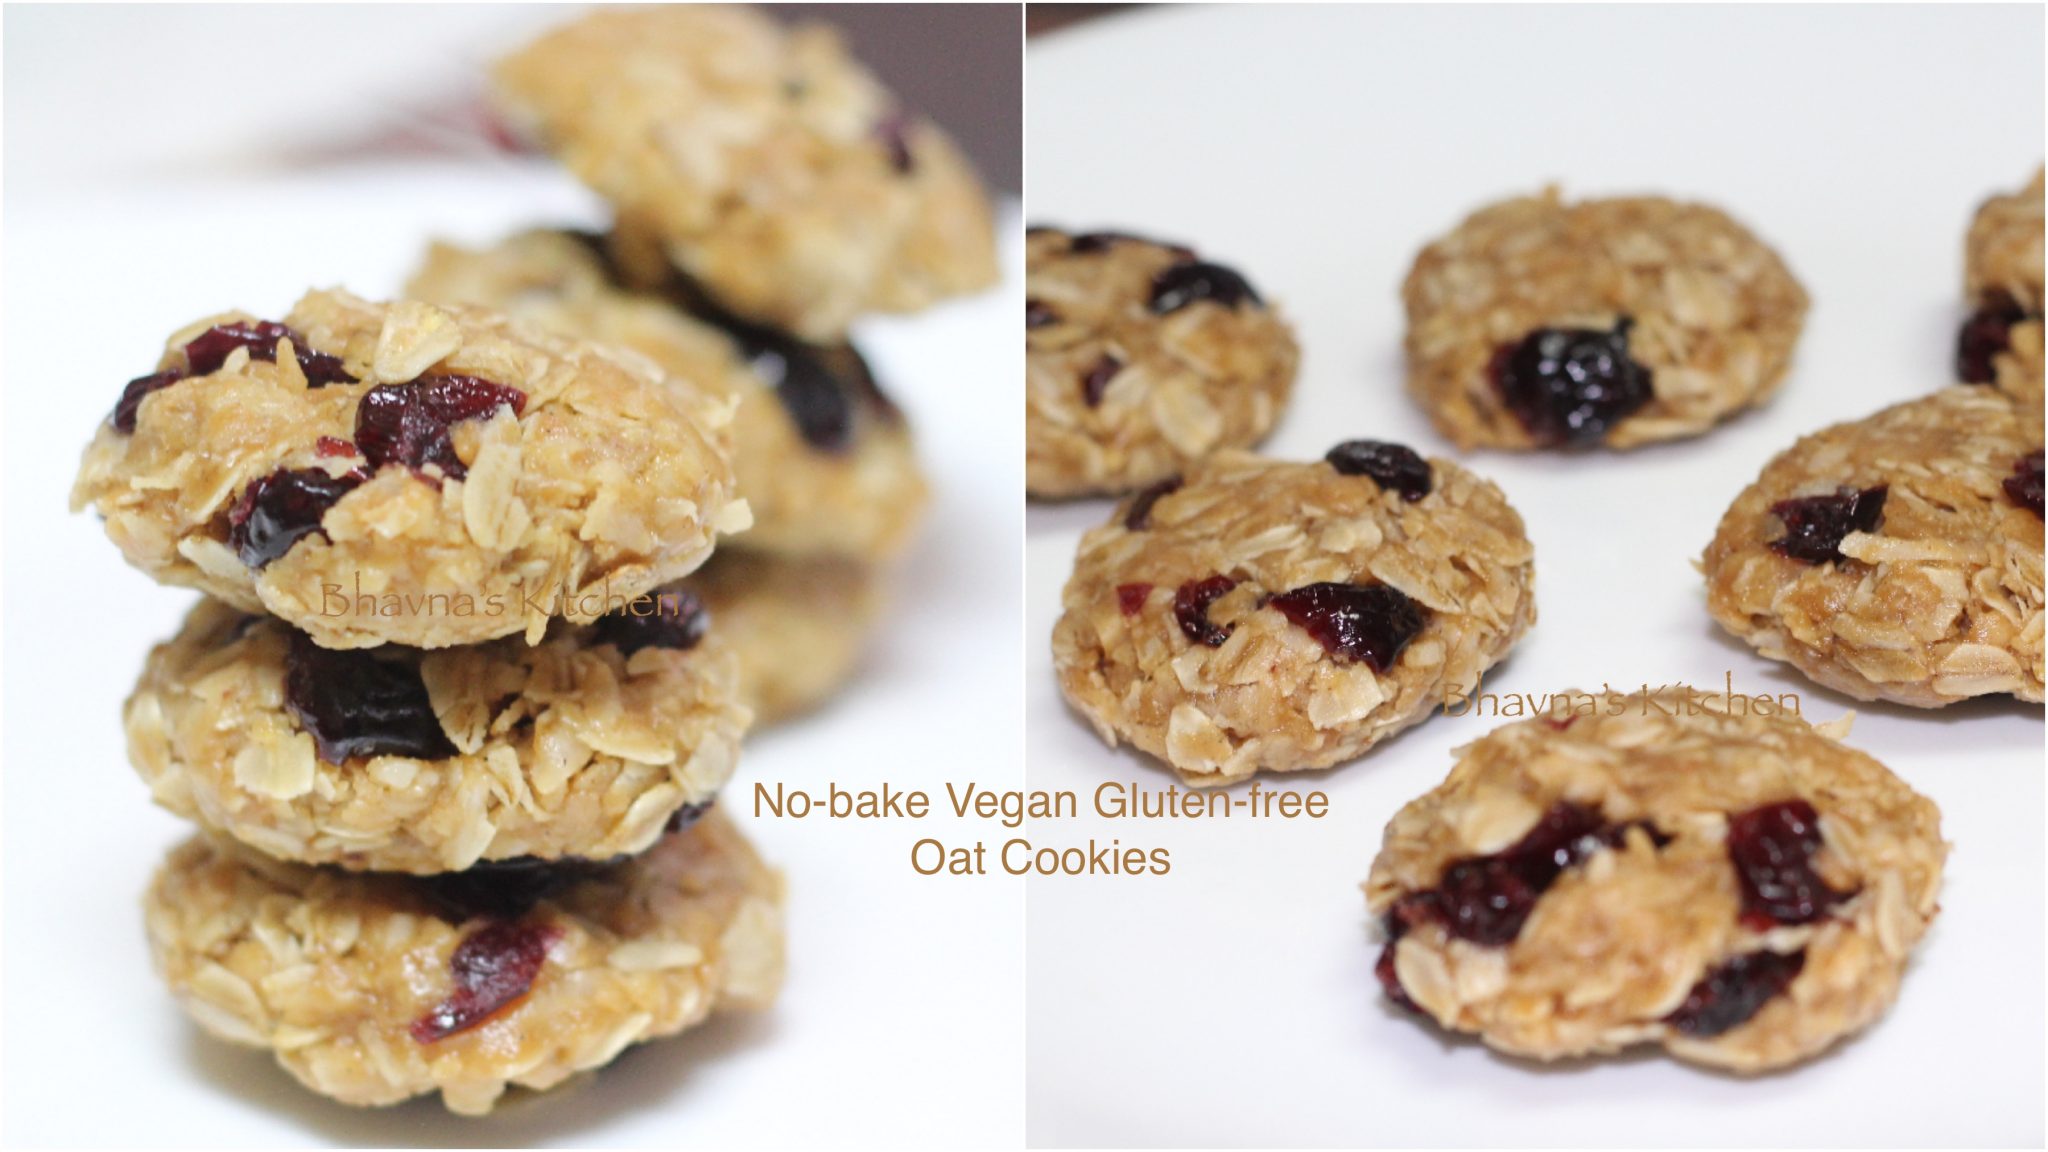 No-bake, Vegan, Gluten-free Oat Cookies